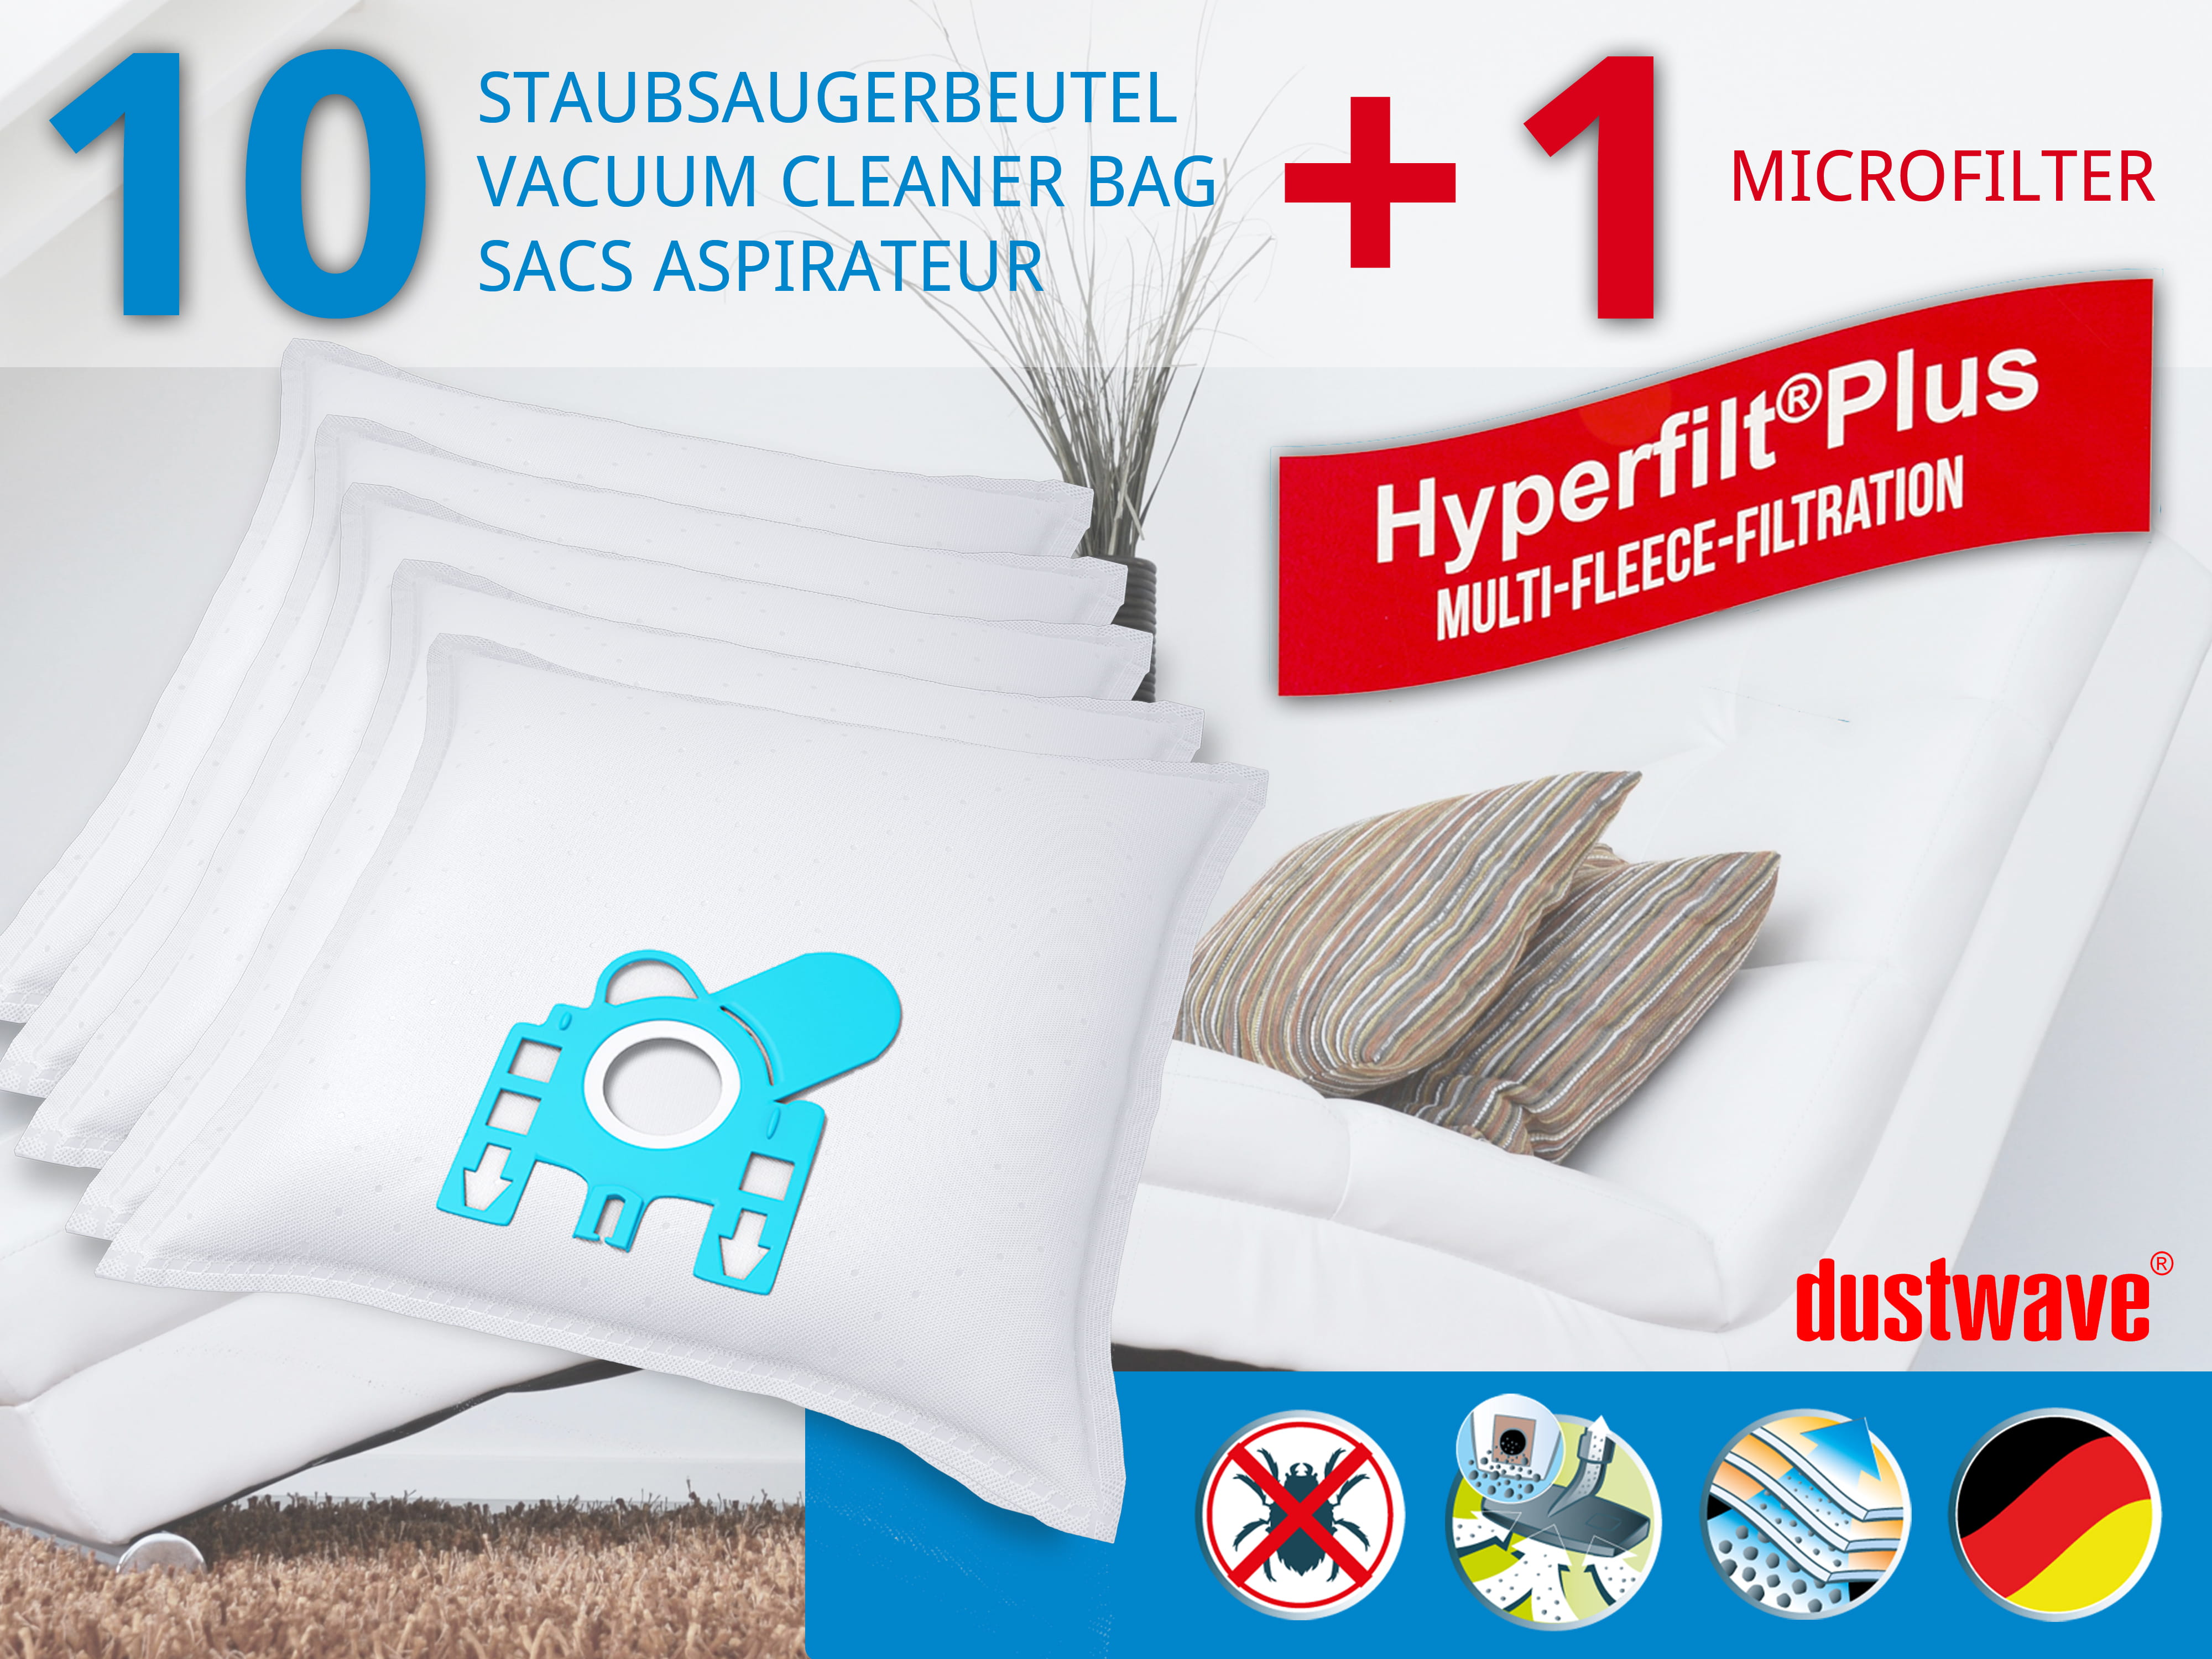 Dustwave® 10 Staubsaugerbeutel für Hoover T4516 / TRT4516 - hocheffizient, mehrlagiges Mikrovlies mit Hygieneverschluss - Made in Germany